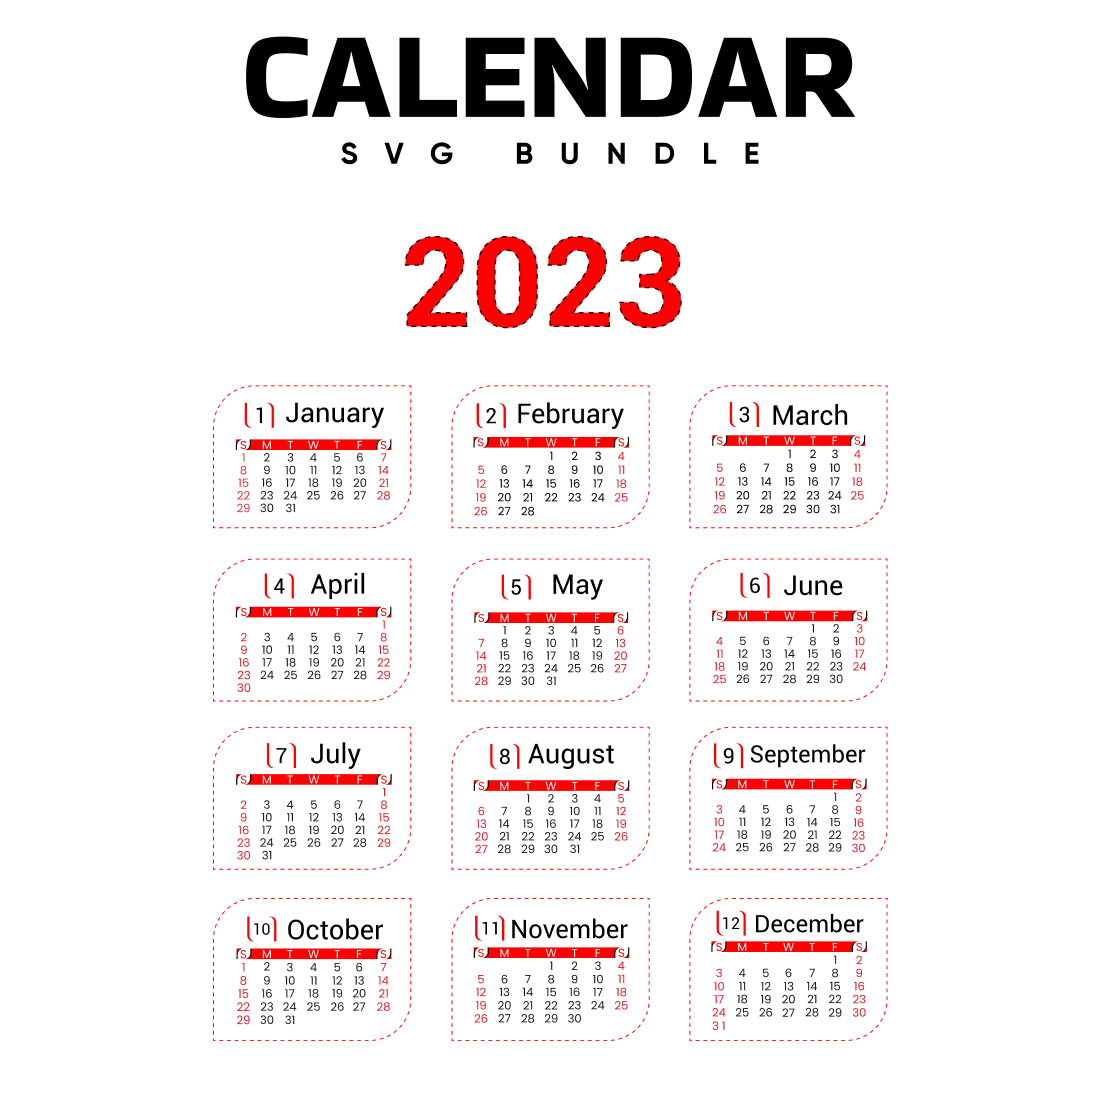 Calendar SVG.